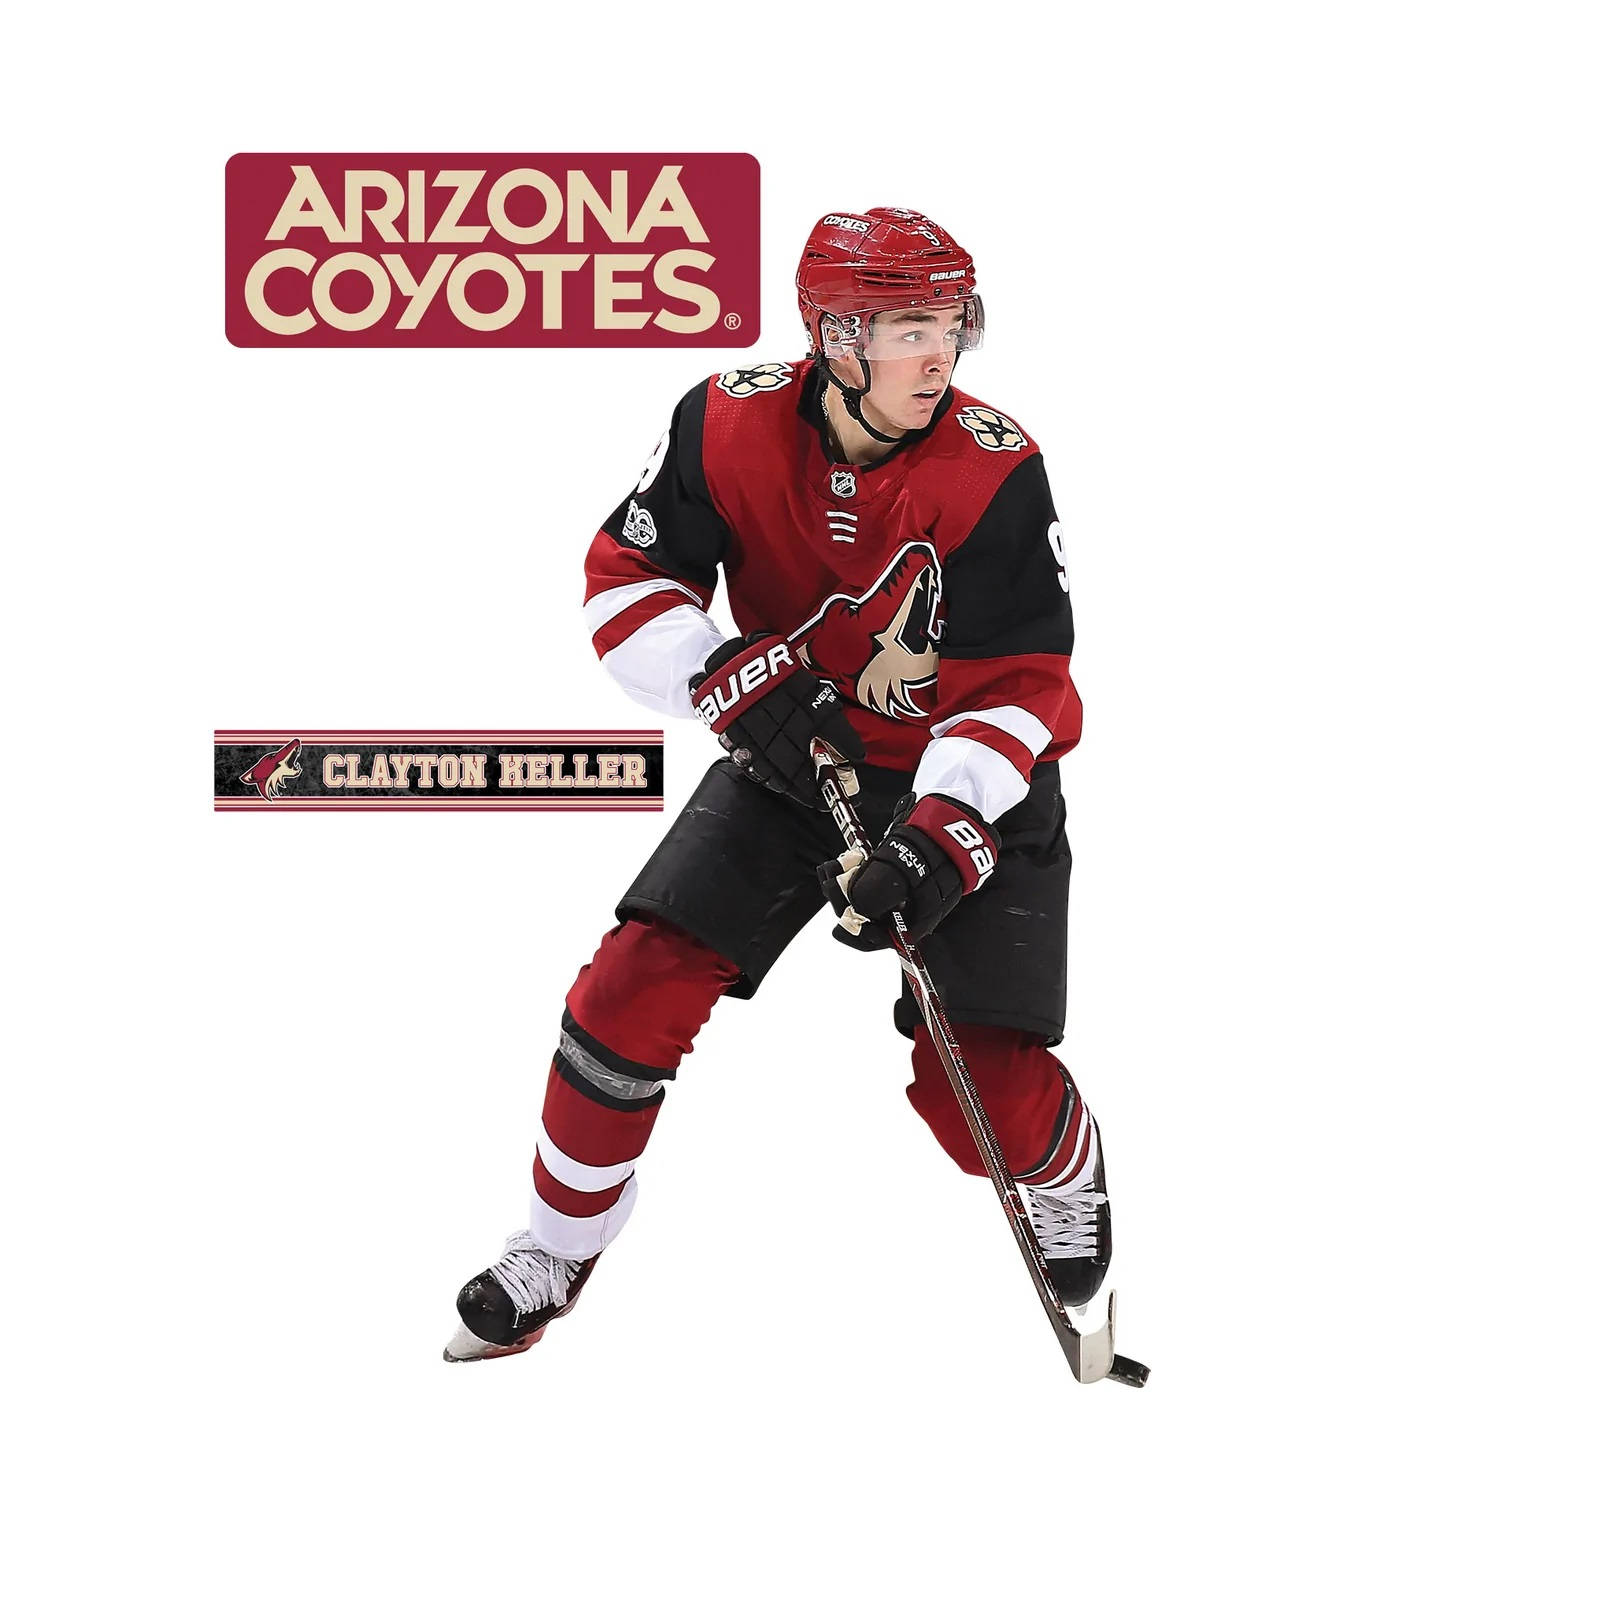 Claytonkeller Arizona Coyotes-posterkonst. Wallpaper